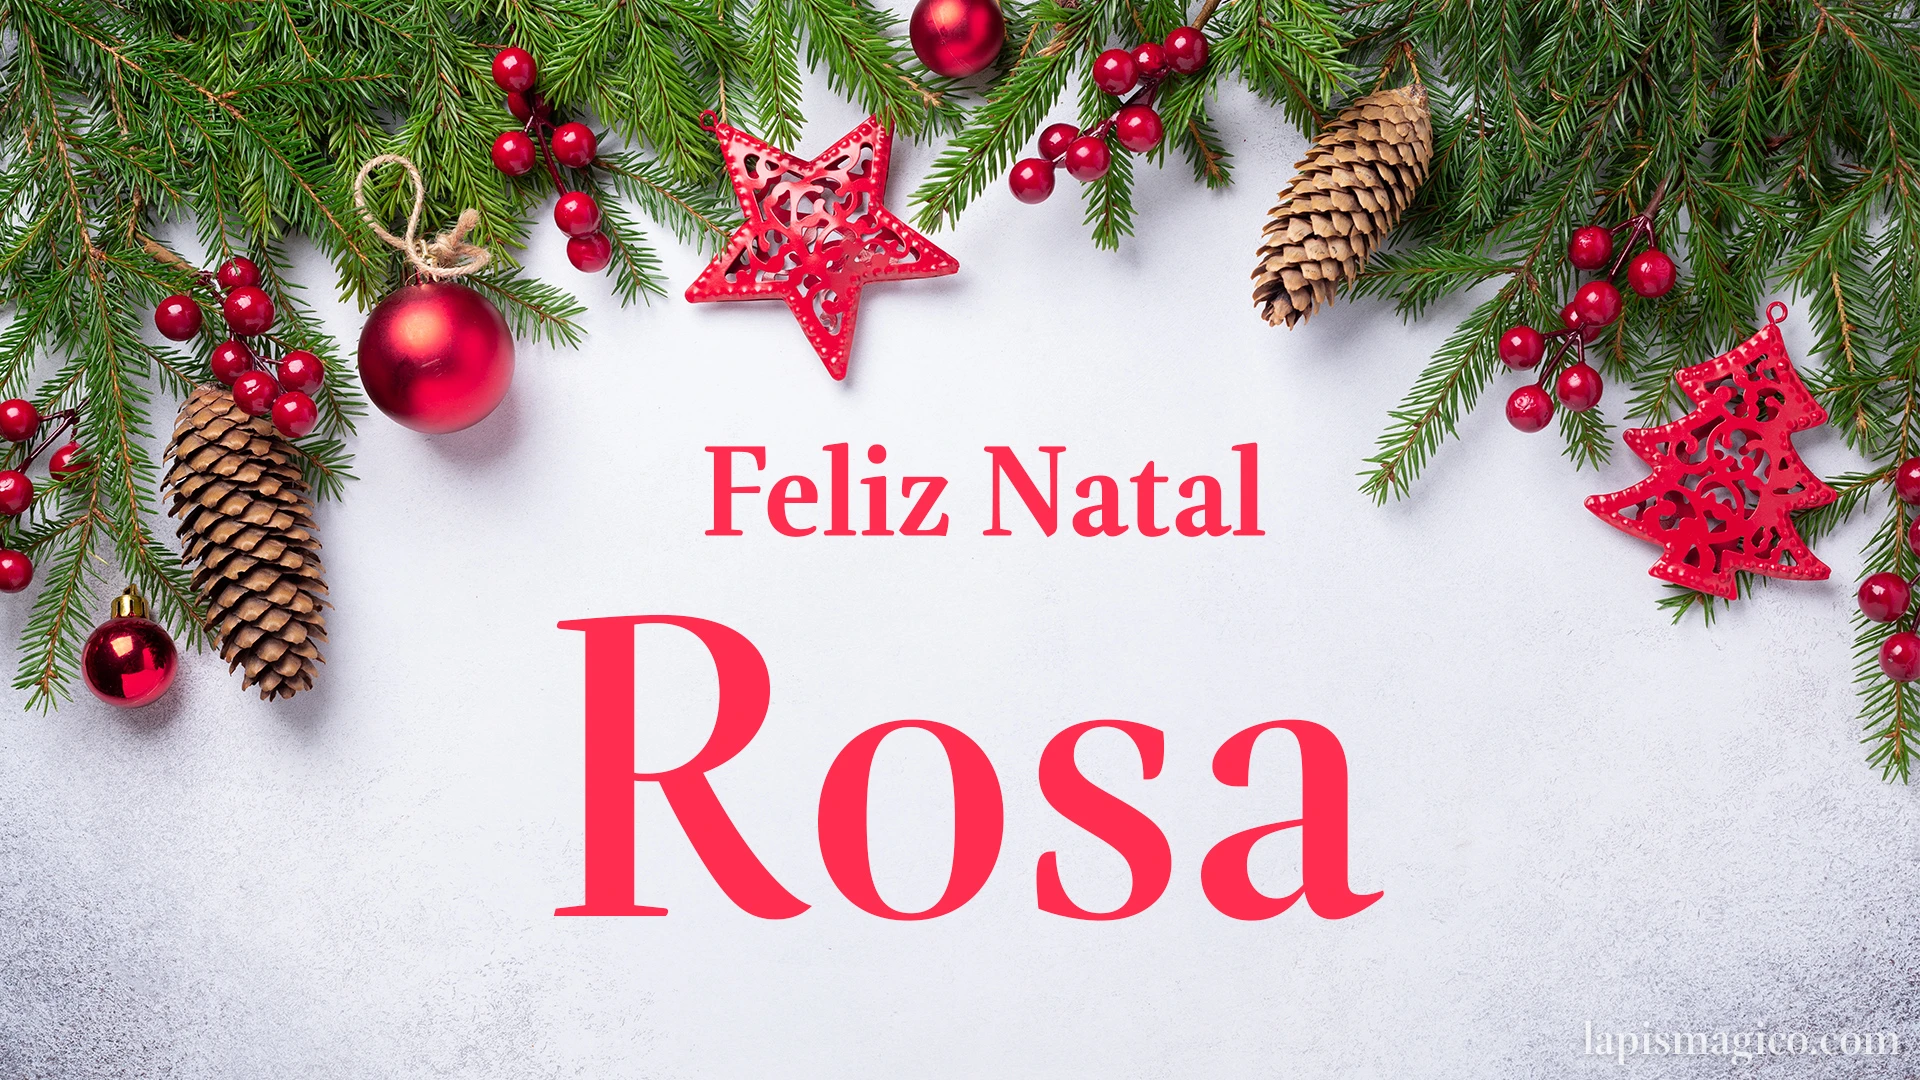 Oh Rosa, cinco postais de Feliz Natal Postal com o teu nome